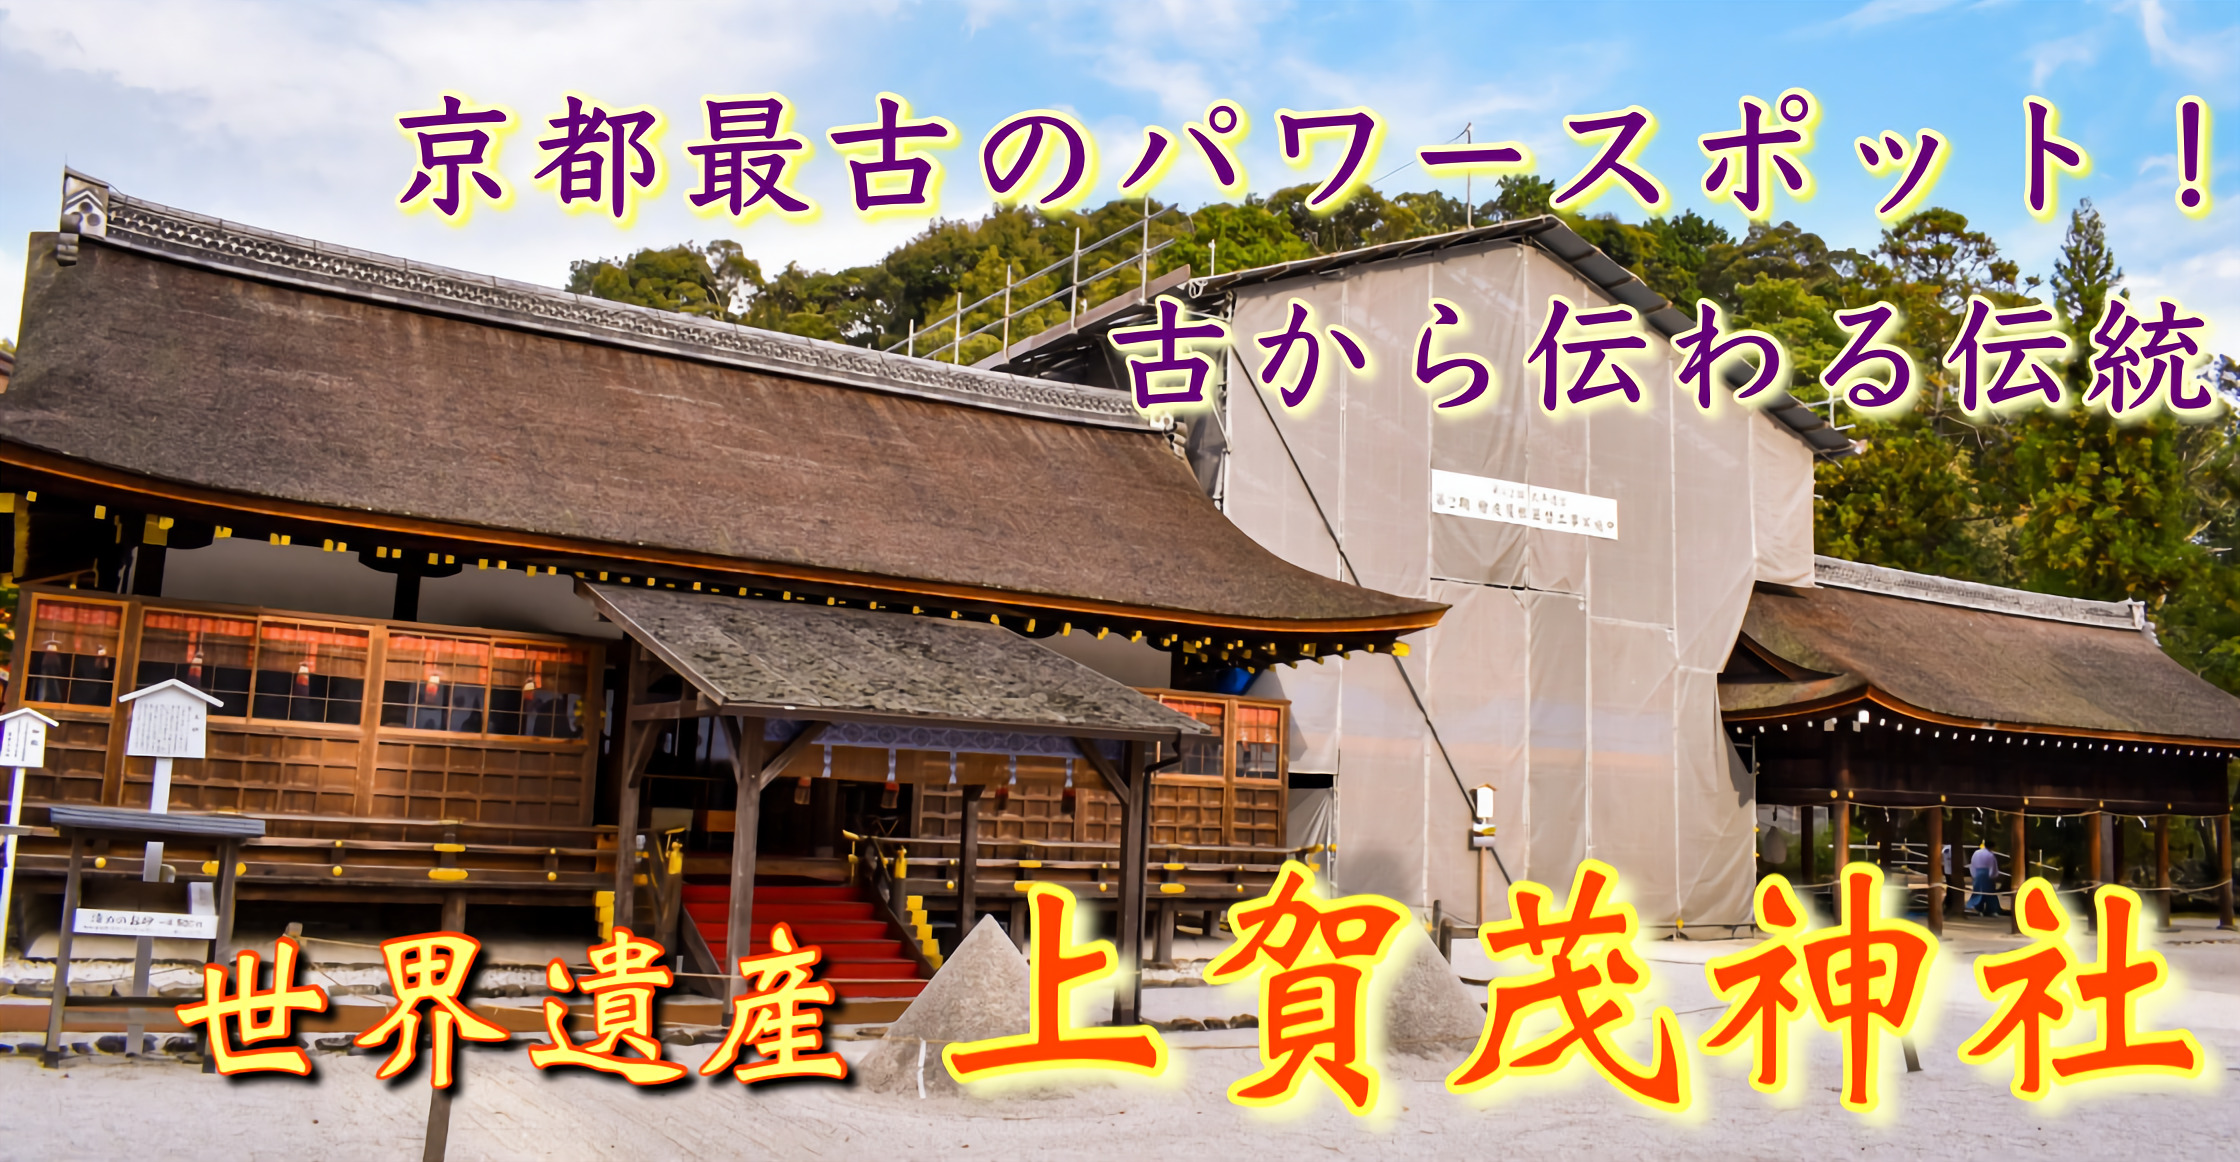 京都旅行21 上賀茂神社の観光案内 京都最古の歴史を誇る最強パワースポット賀茂別雷神社 旅狼どっとこむ